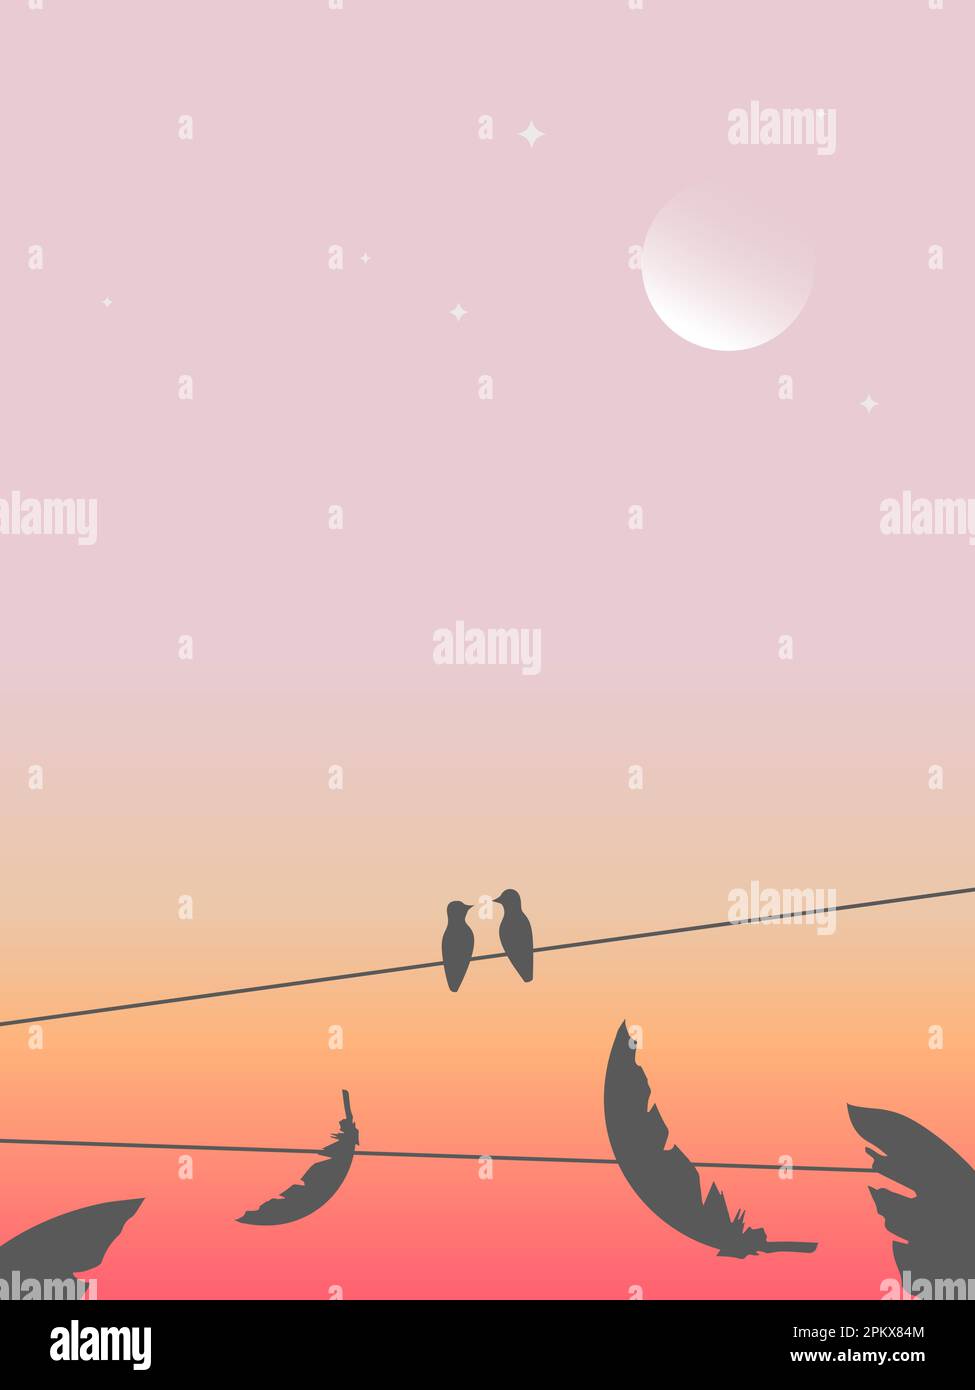 Abbildung von zwei Vögeln, die auf einer Drahtseile sitzen, vor dem Hintergrund des farbenfrohen Abendhimmels, des Mondes und der herabfallenden Federn. Stock Vektor